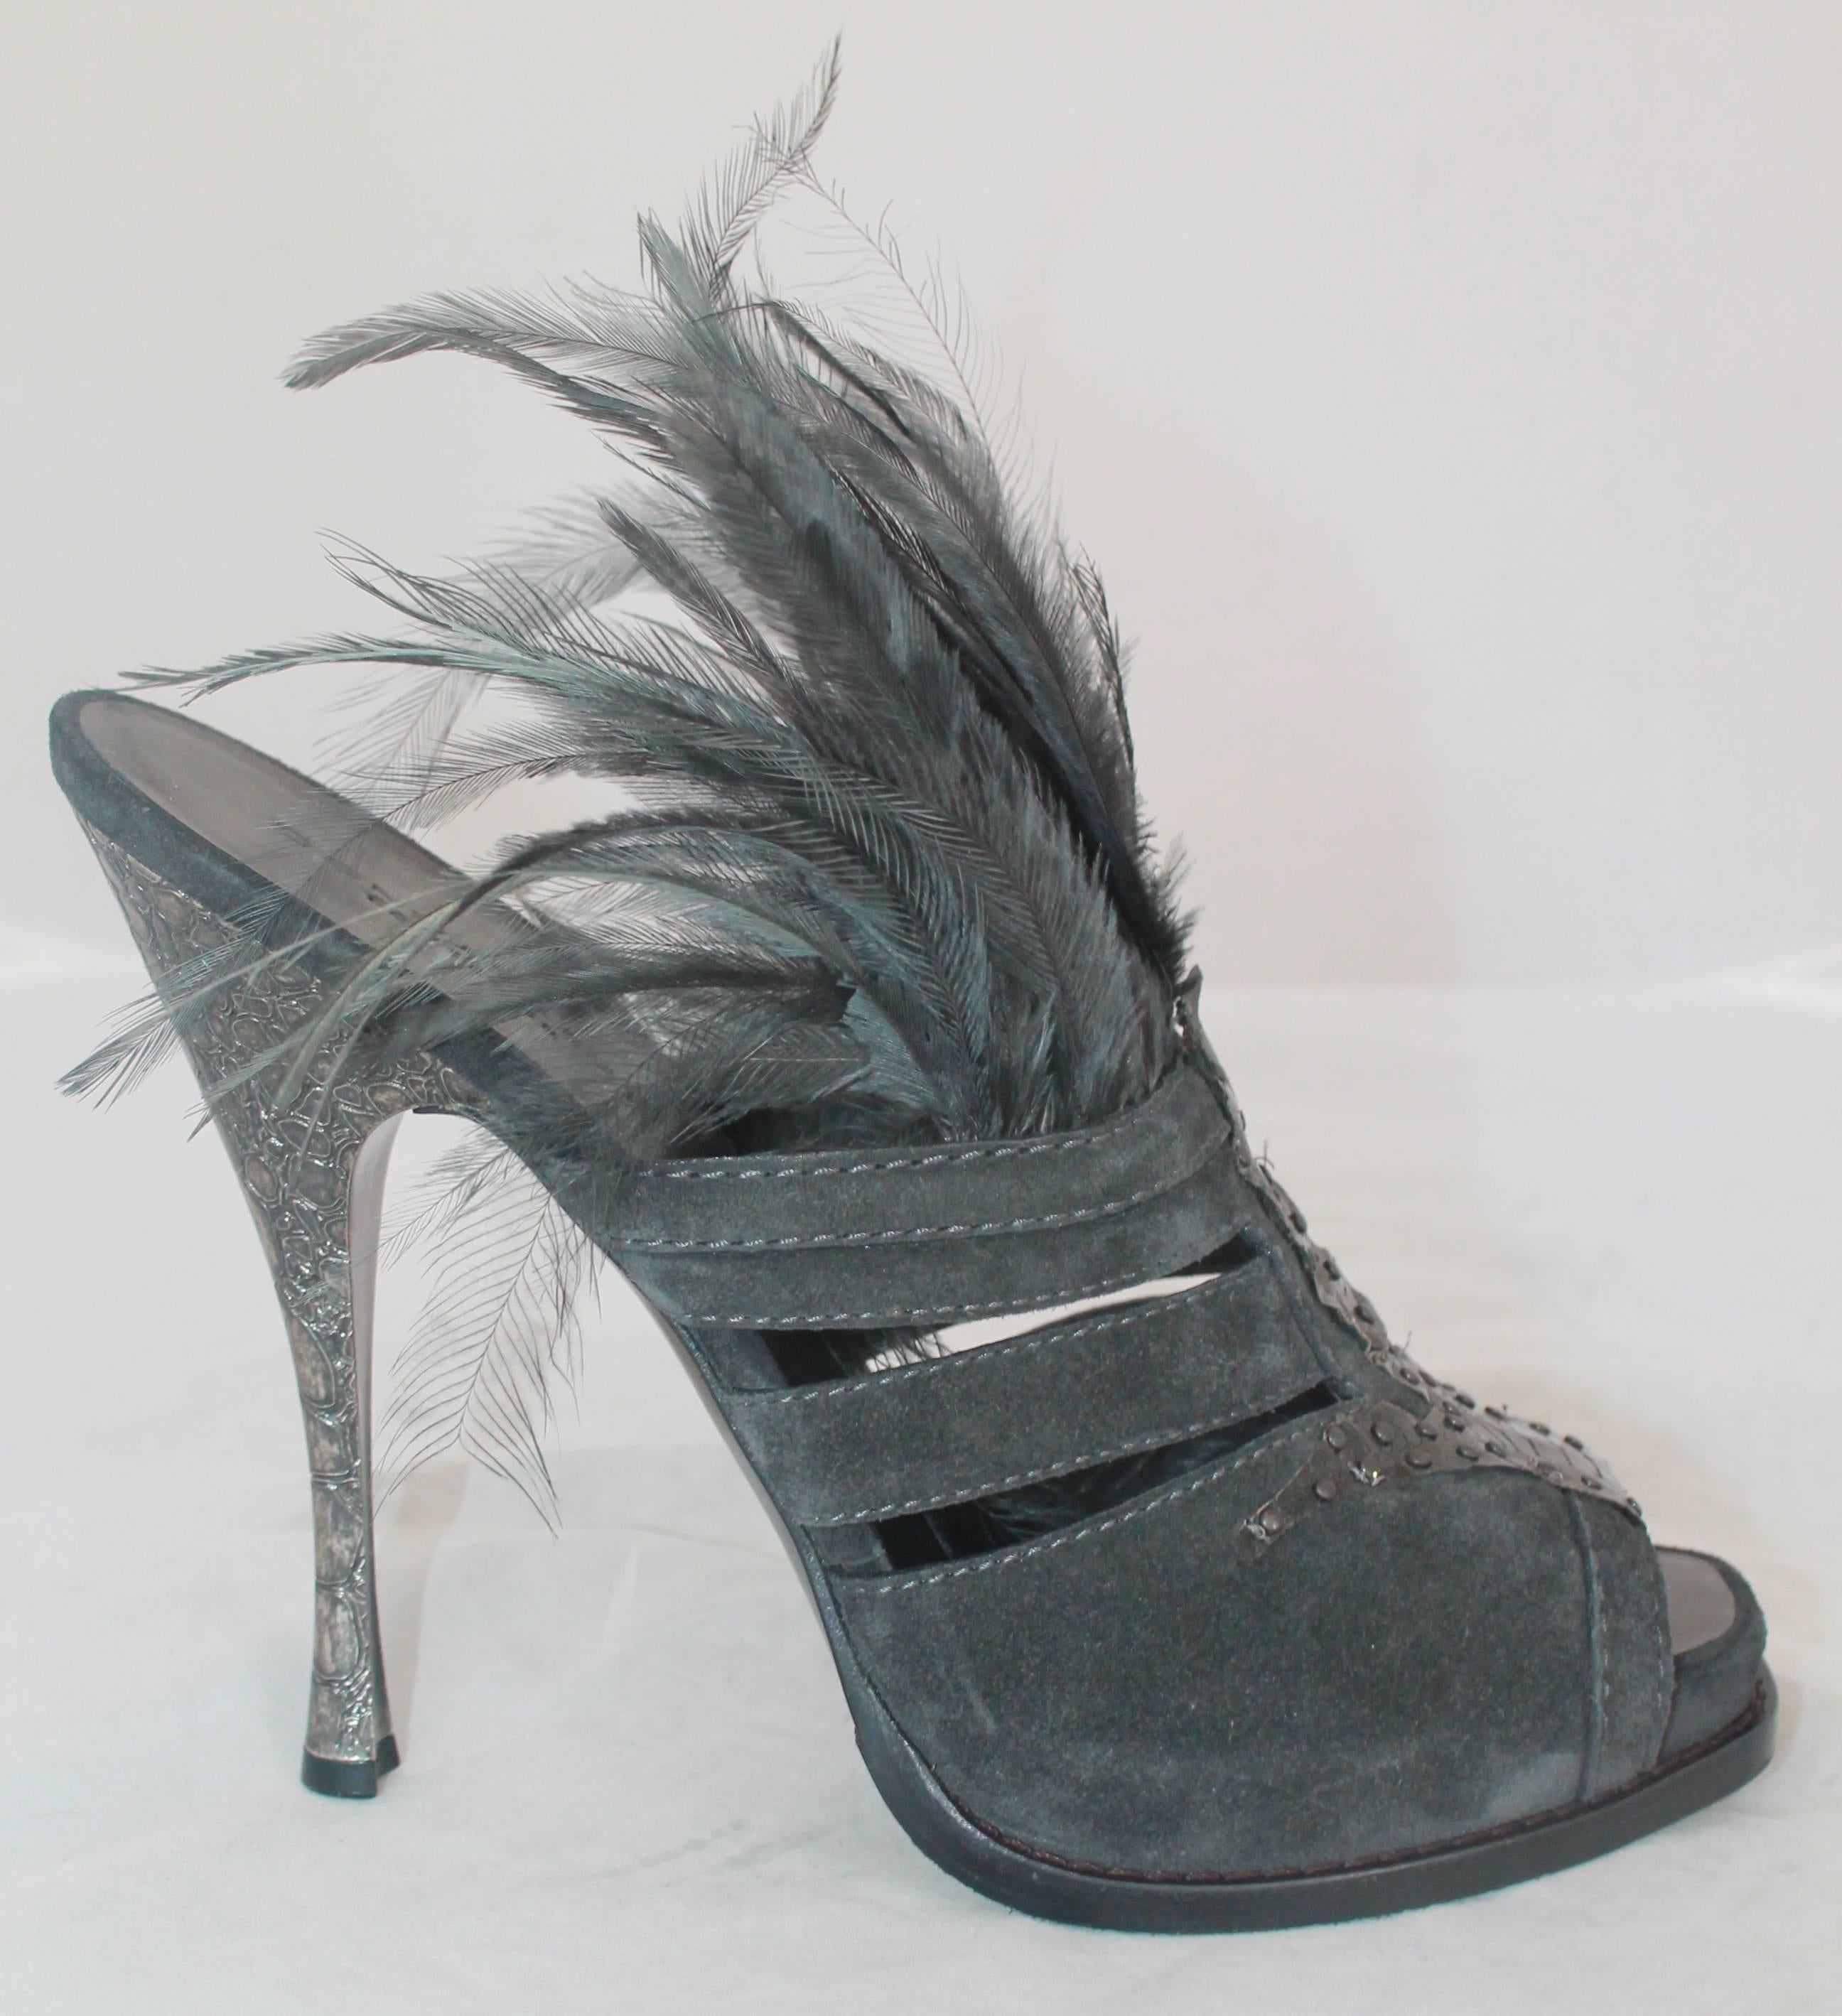 Donna Karan Collection Charcoal Wildleder, Schlangenhaut, & Feder Slide Heels - 41.  Diese herrlich extravaganten Absätze sind nie getragen worden.  Sie sind mit schwarzen Schlangendetails, Federn am Oberteil und geprägten Kroko-Metallabsätzen